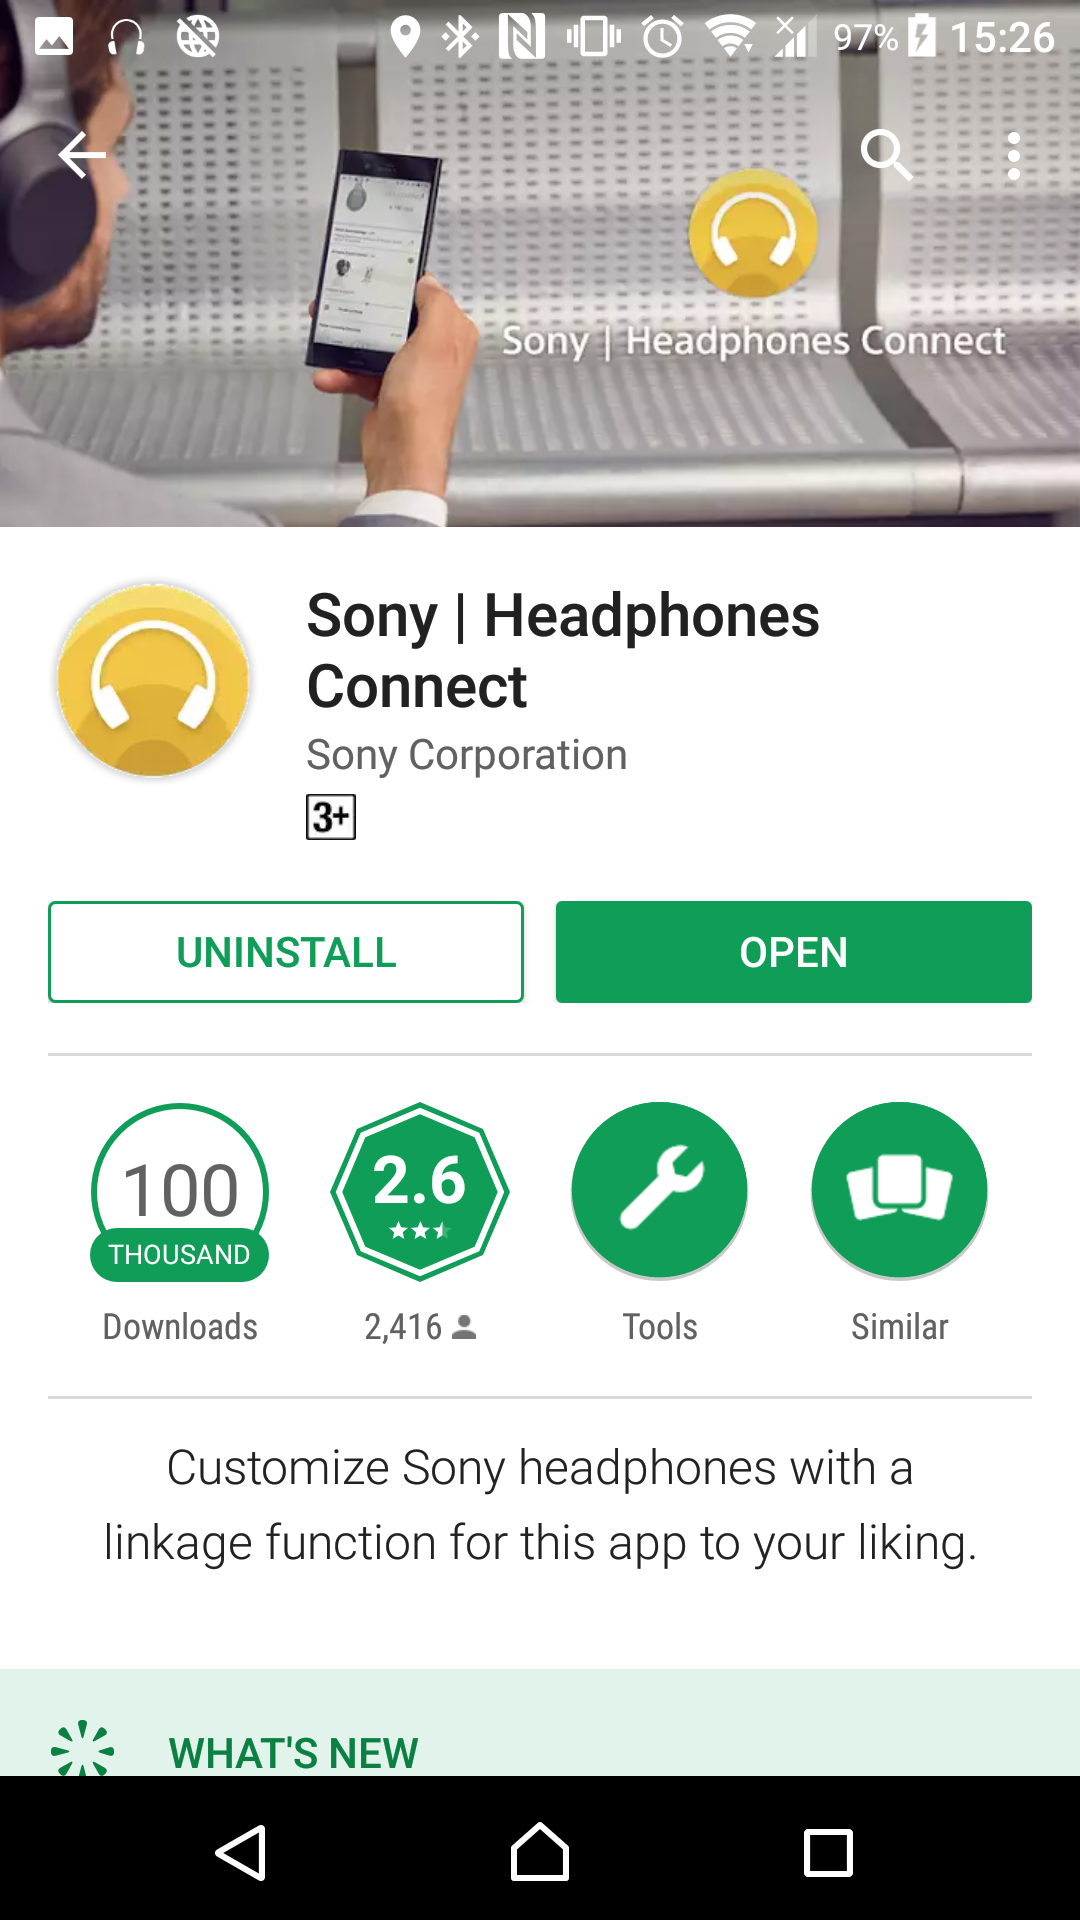 [Review] รีวิว Sony WI-1000X หูฟัง Wireless In-ear ไดรเวอร์ผสม ที่มาพร้อมระบบตัดเสียงรบกวนระดับทอปในตลาด